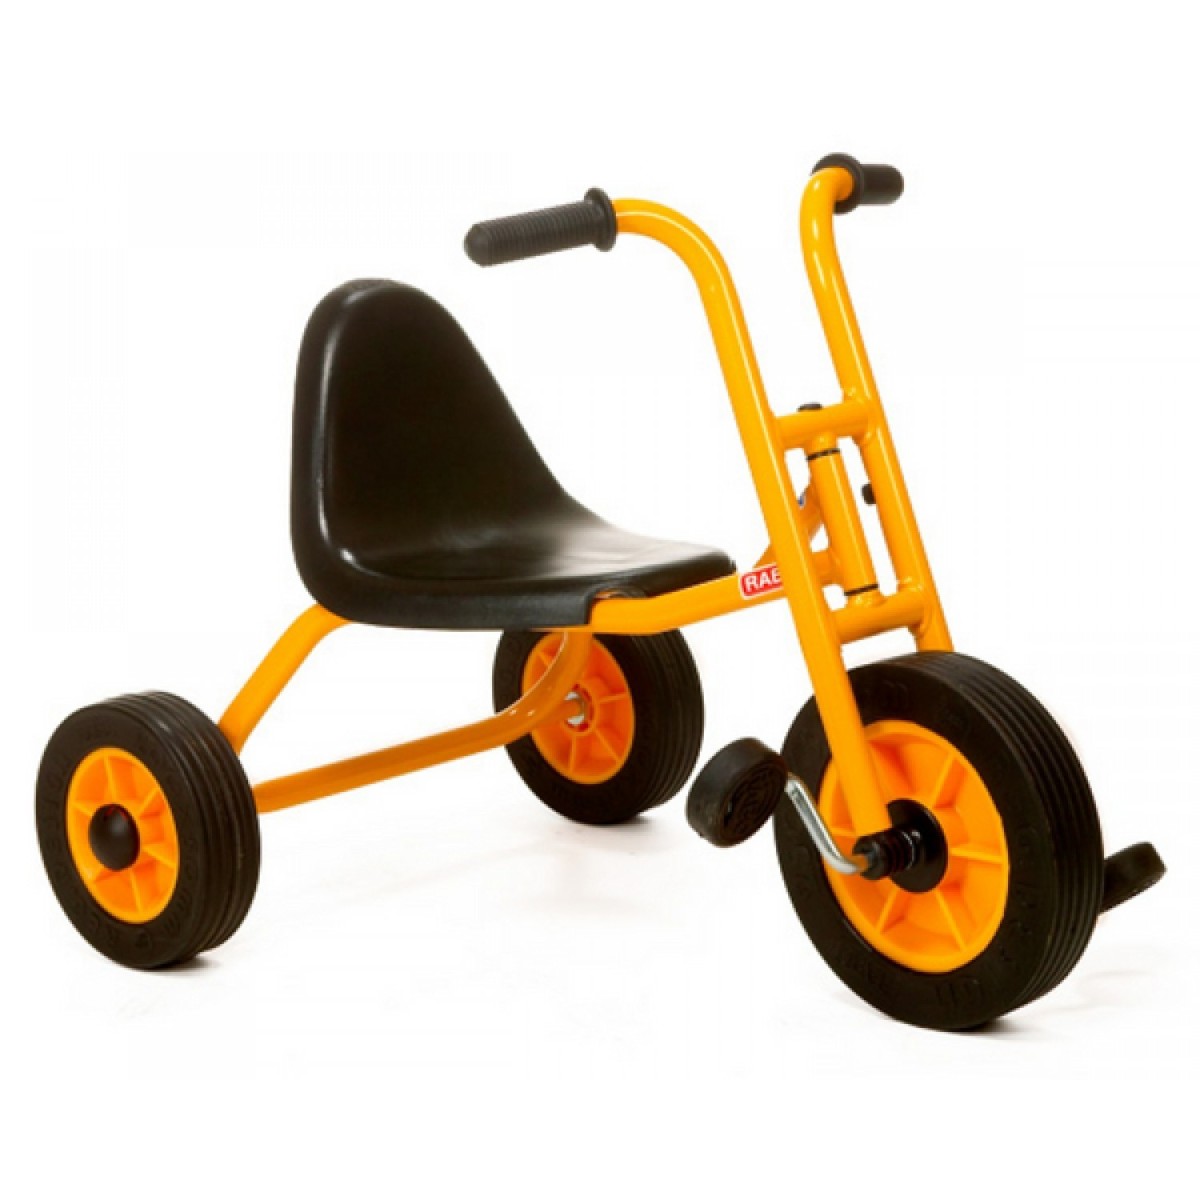 Tricycle siège ergonomique 3 à 8 ans Le tricycle avec siège ergonomique est le tricycle préféré des tout-petits.
Le siège et le